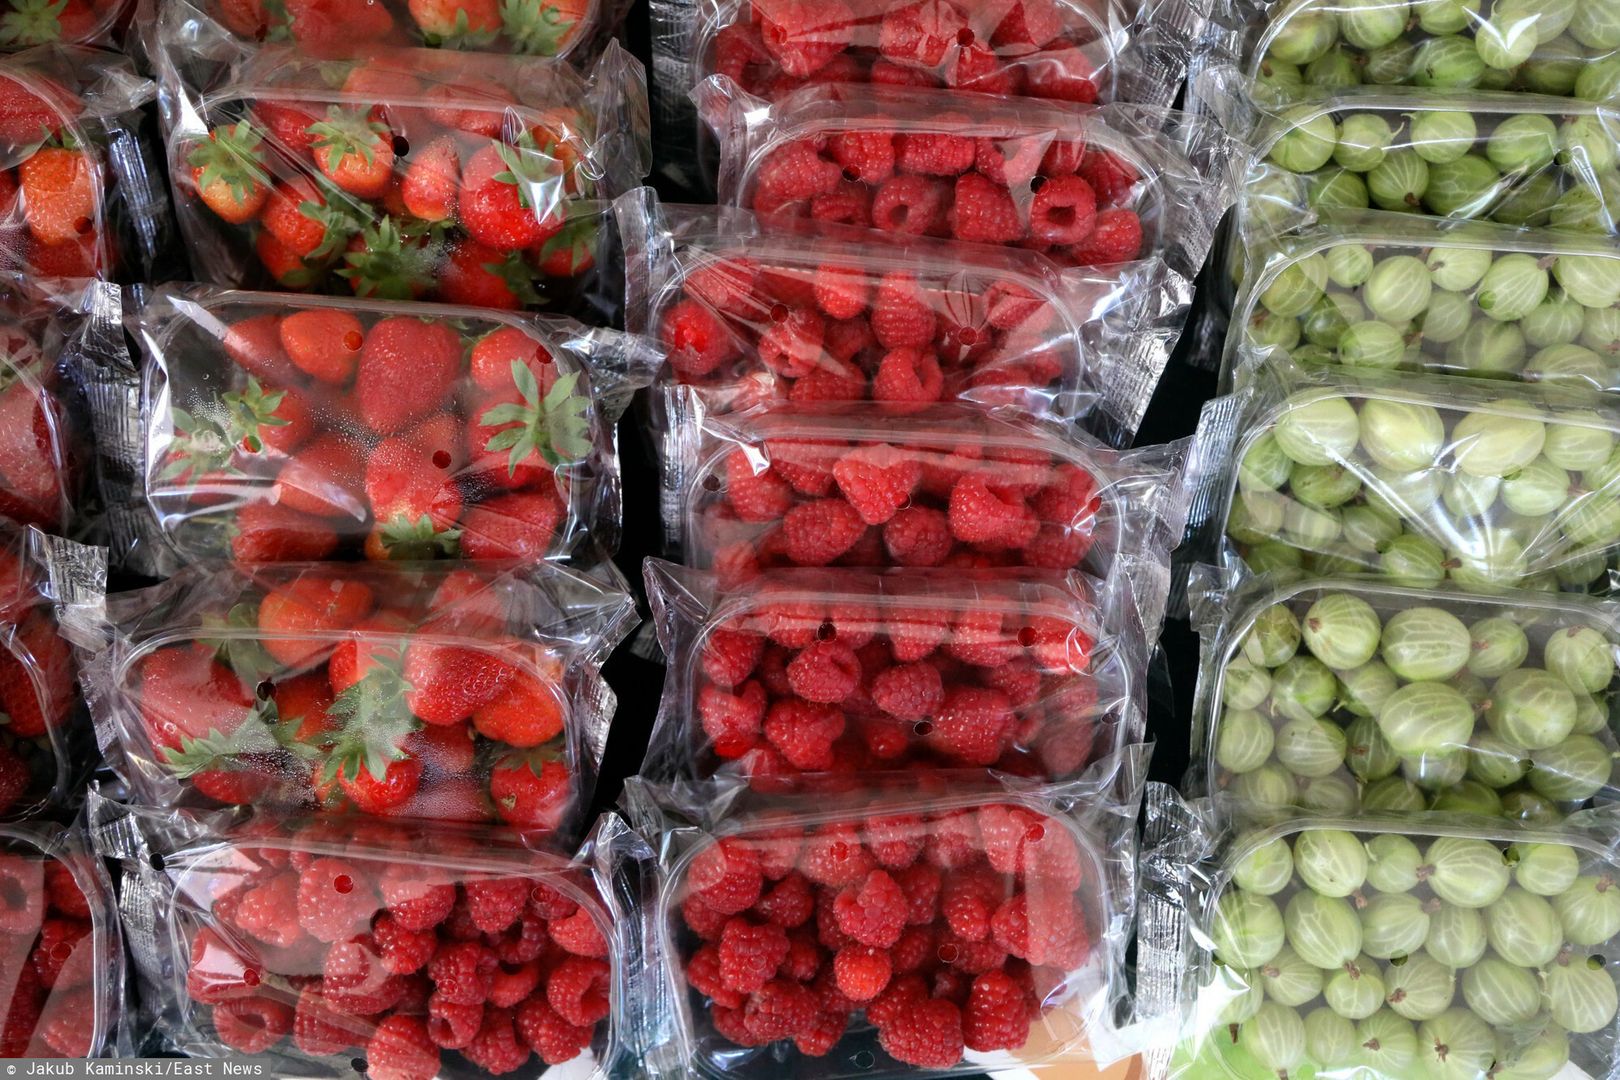 Koniec z owocami w plastiku? Posłowie pytają o zakaz